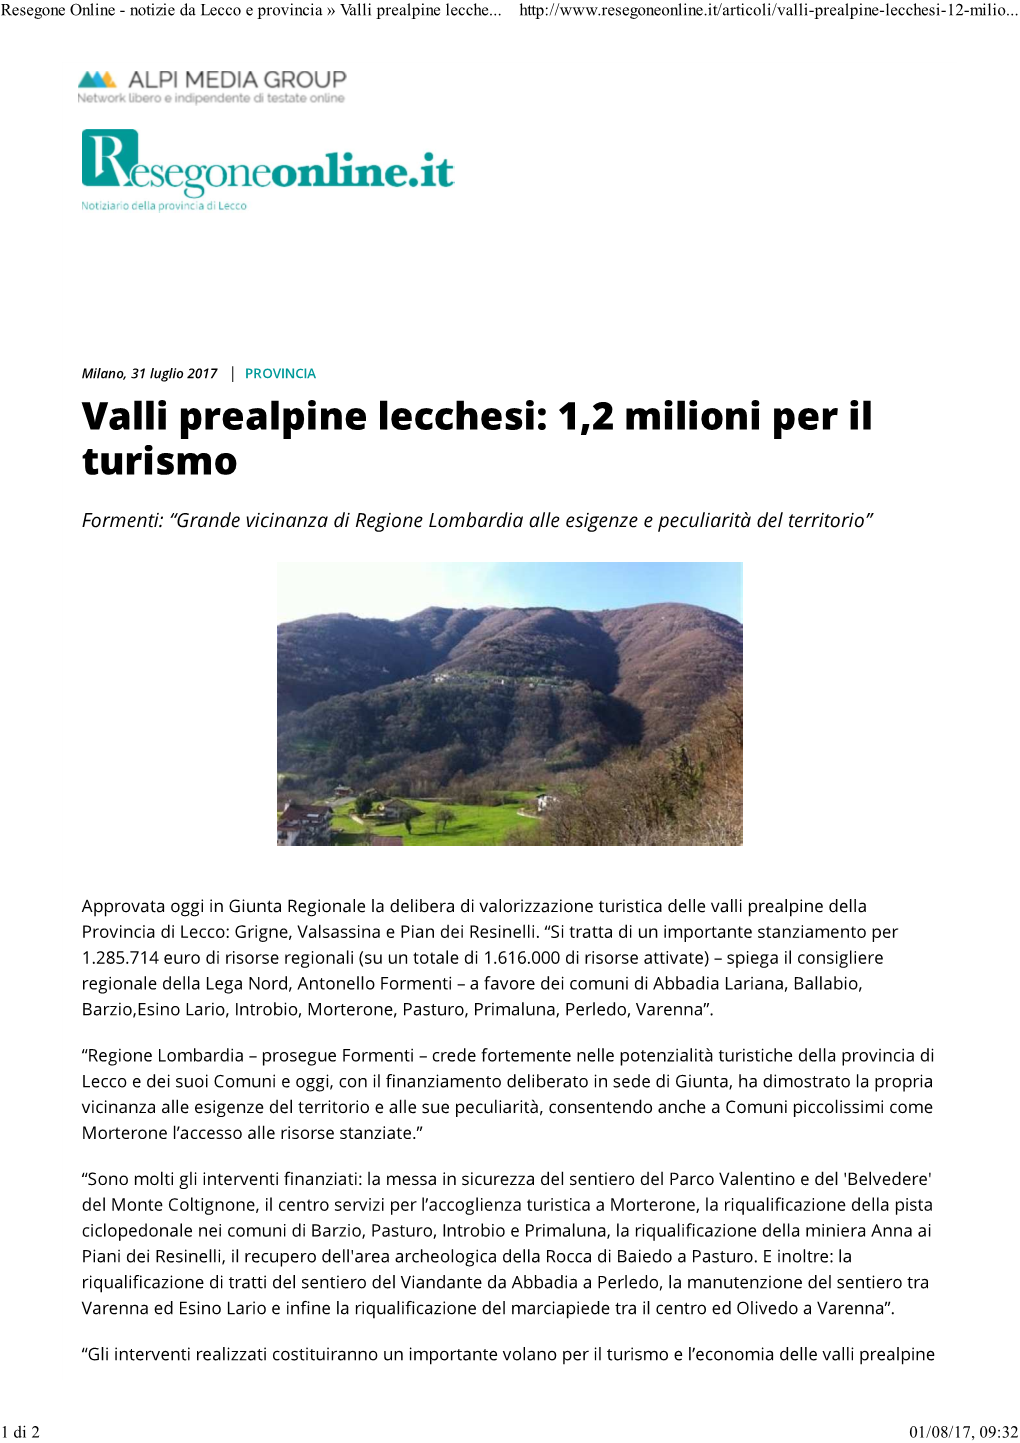 Valli Prealpine Lecchesi: 1,2 Milioni Per Il Turismo